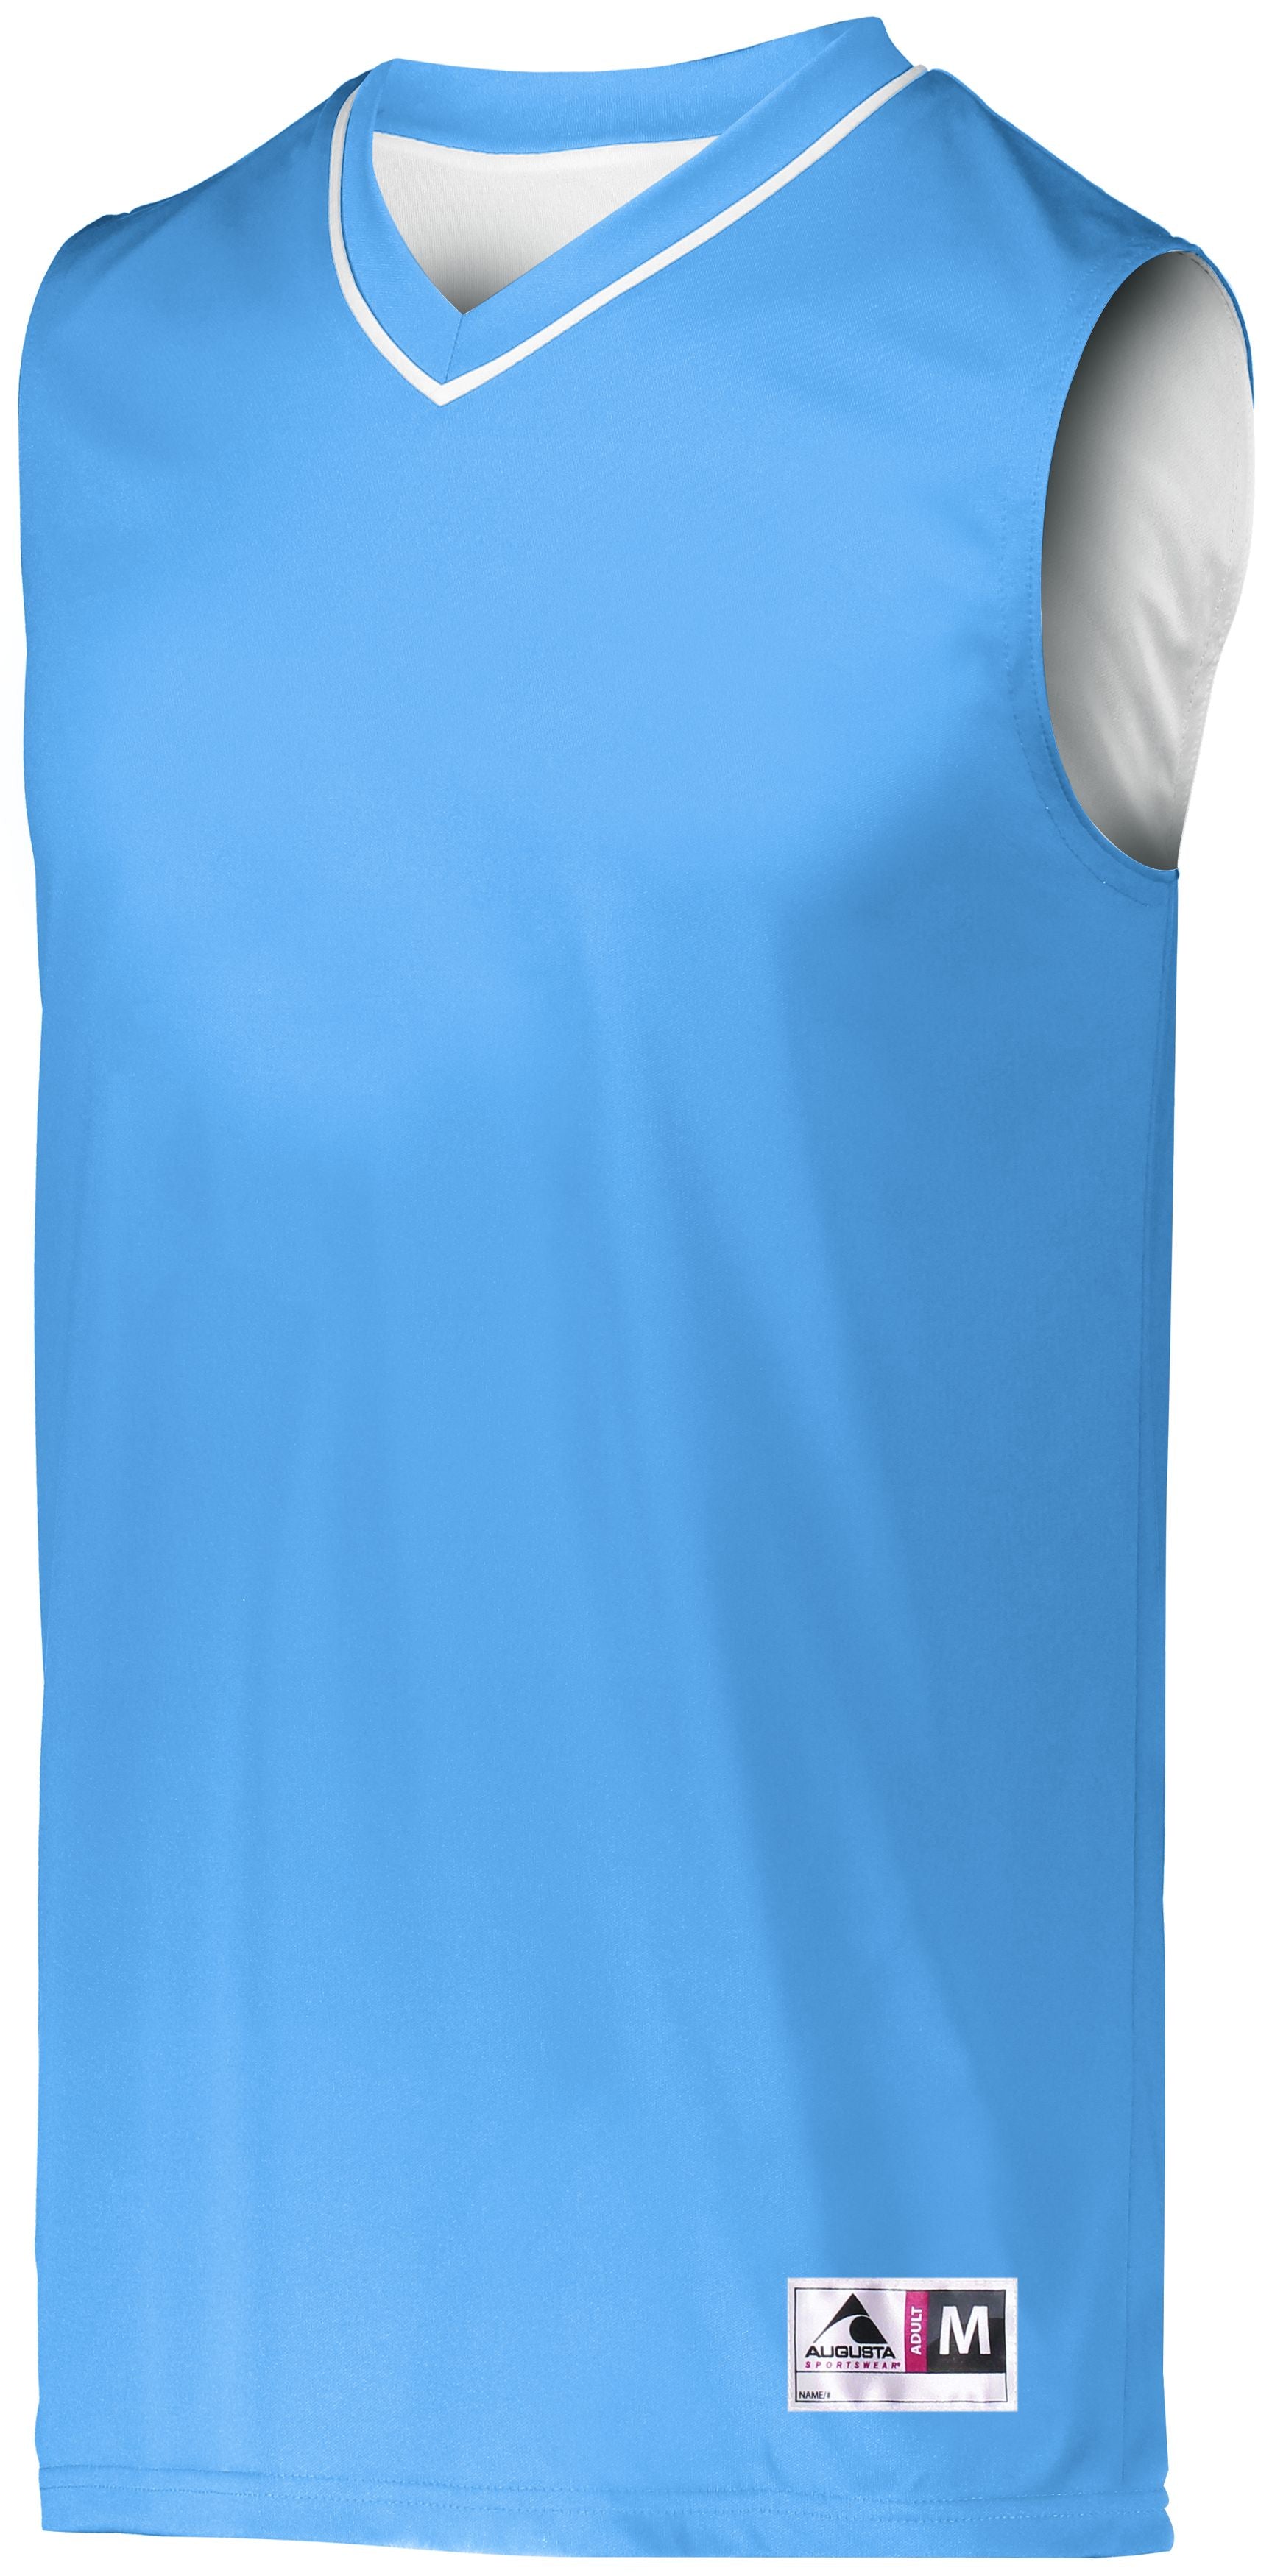 Augusta Sportswear Reversible Two-Color Jersey